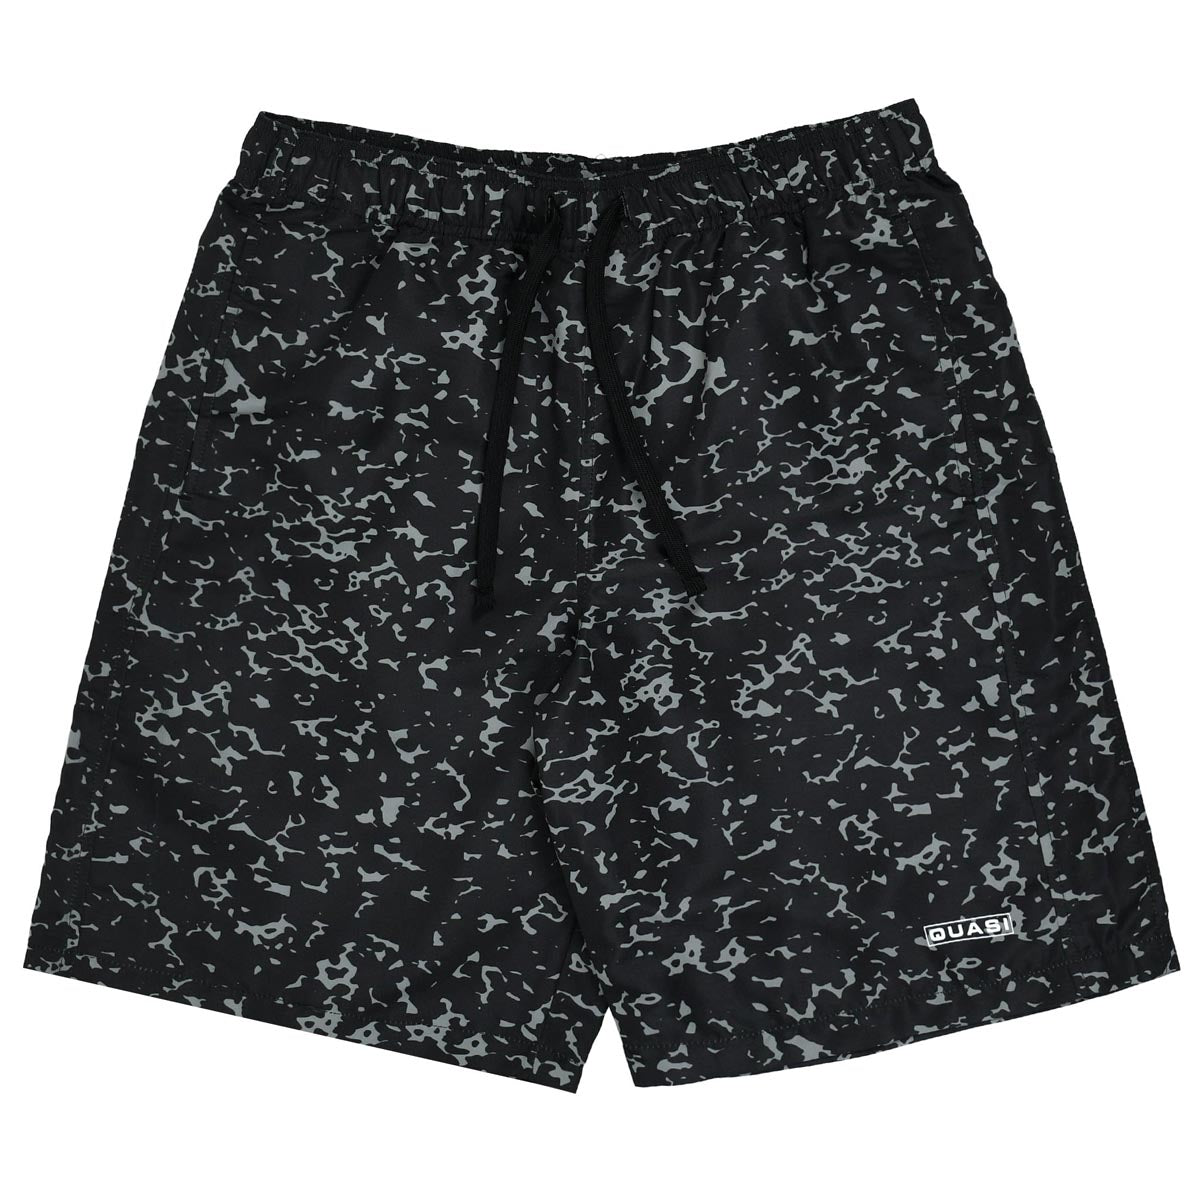 Quasi Duece Shorts - Black image 1